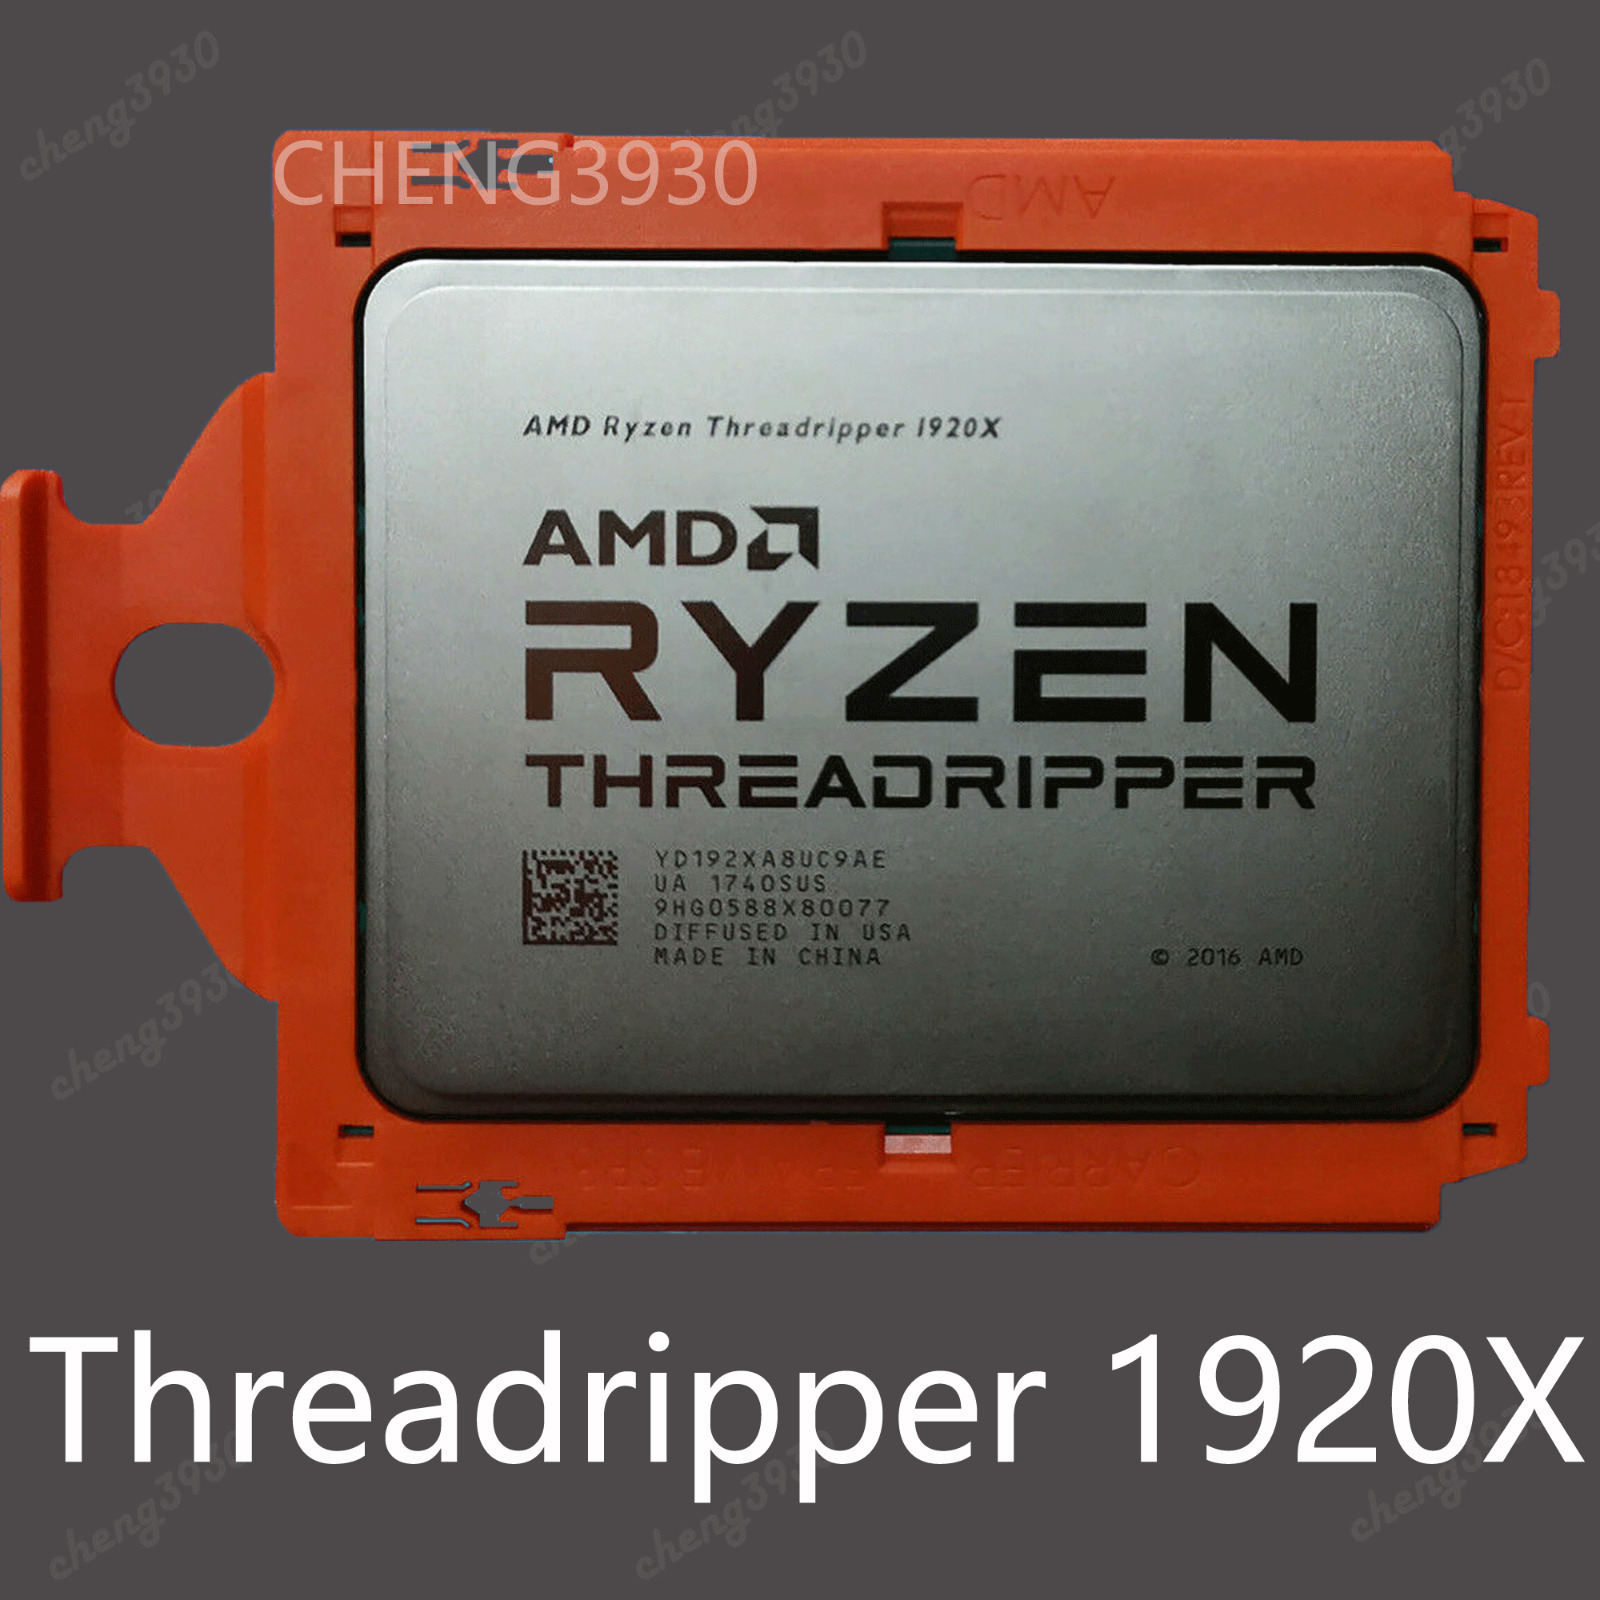 AMD Ryzen Threadripper 1920x 3.50ghz 12 cores 24 threads tr4 x399 CPU processor